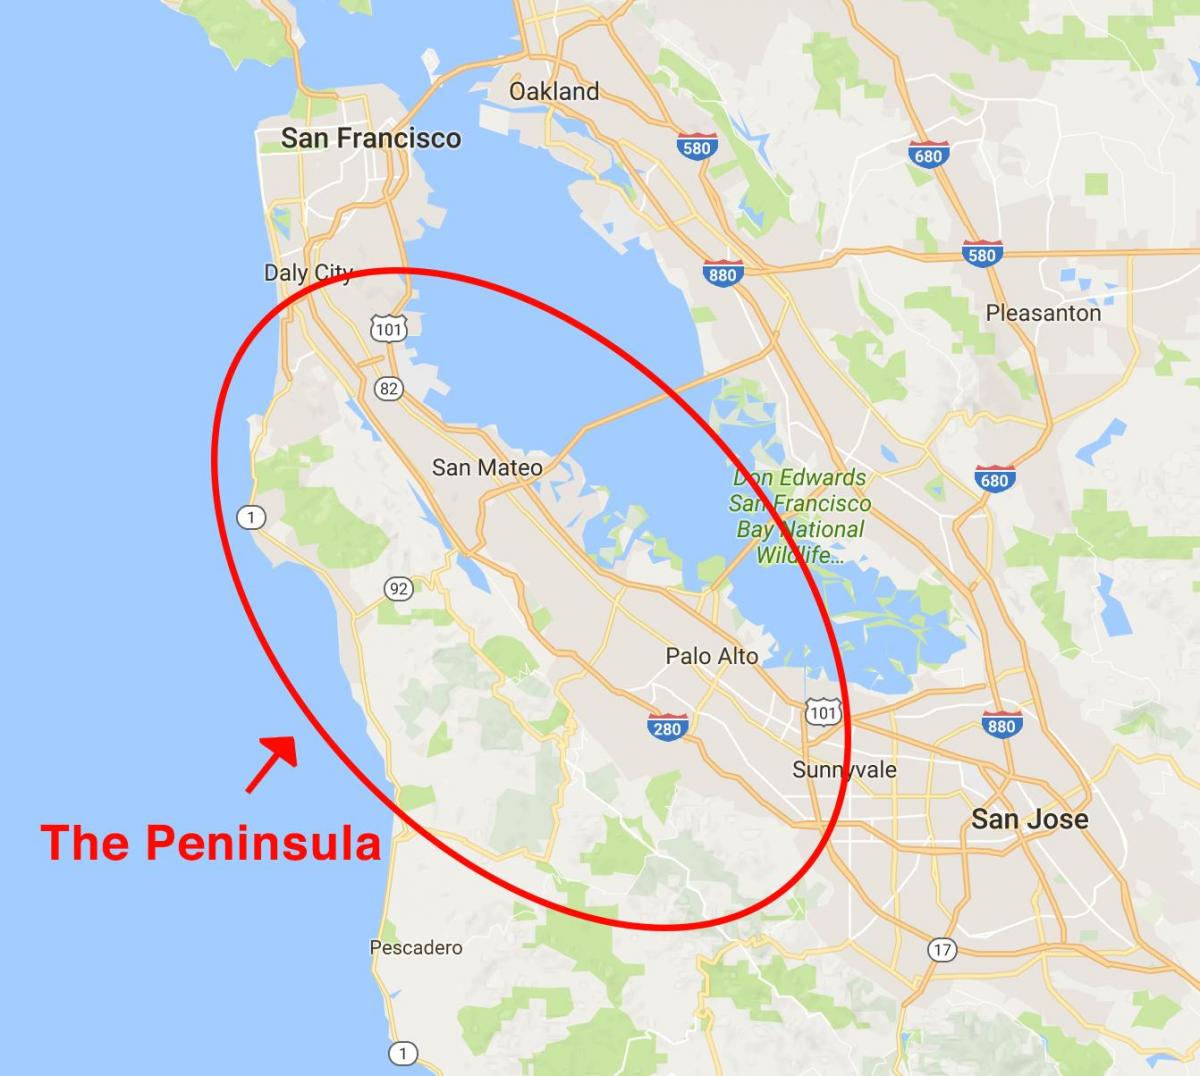 Mappa della penisola di San Francisco 